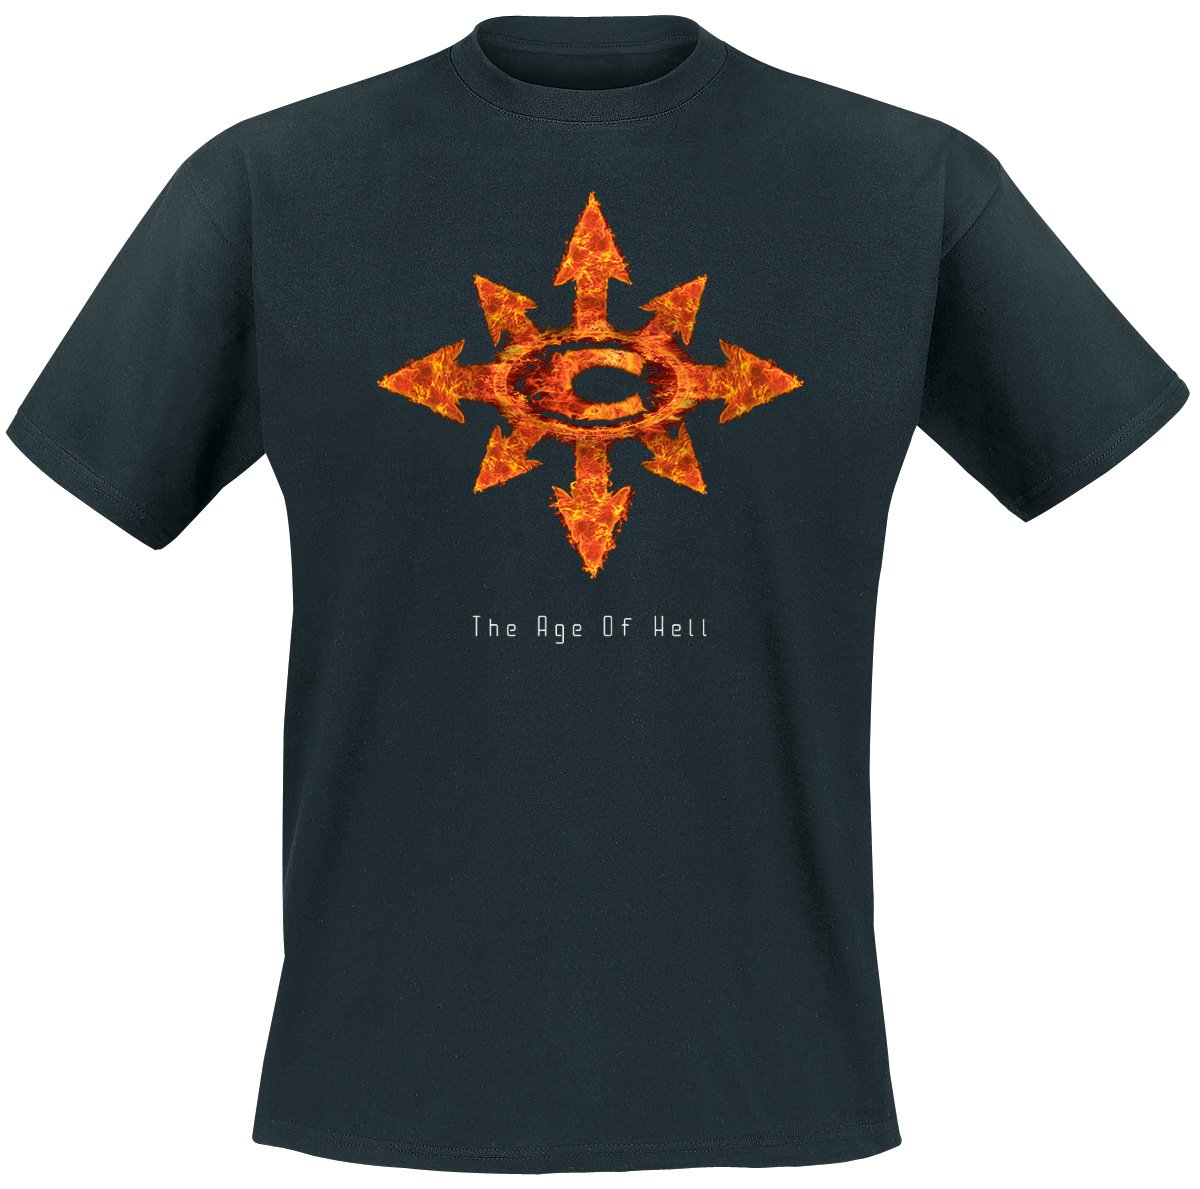 Chimaira "Hell" Shirt